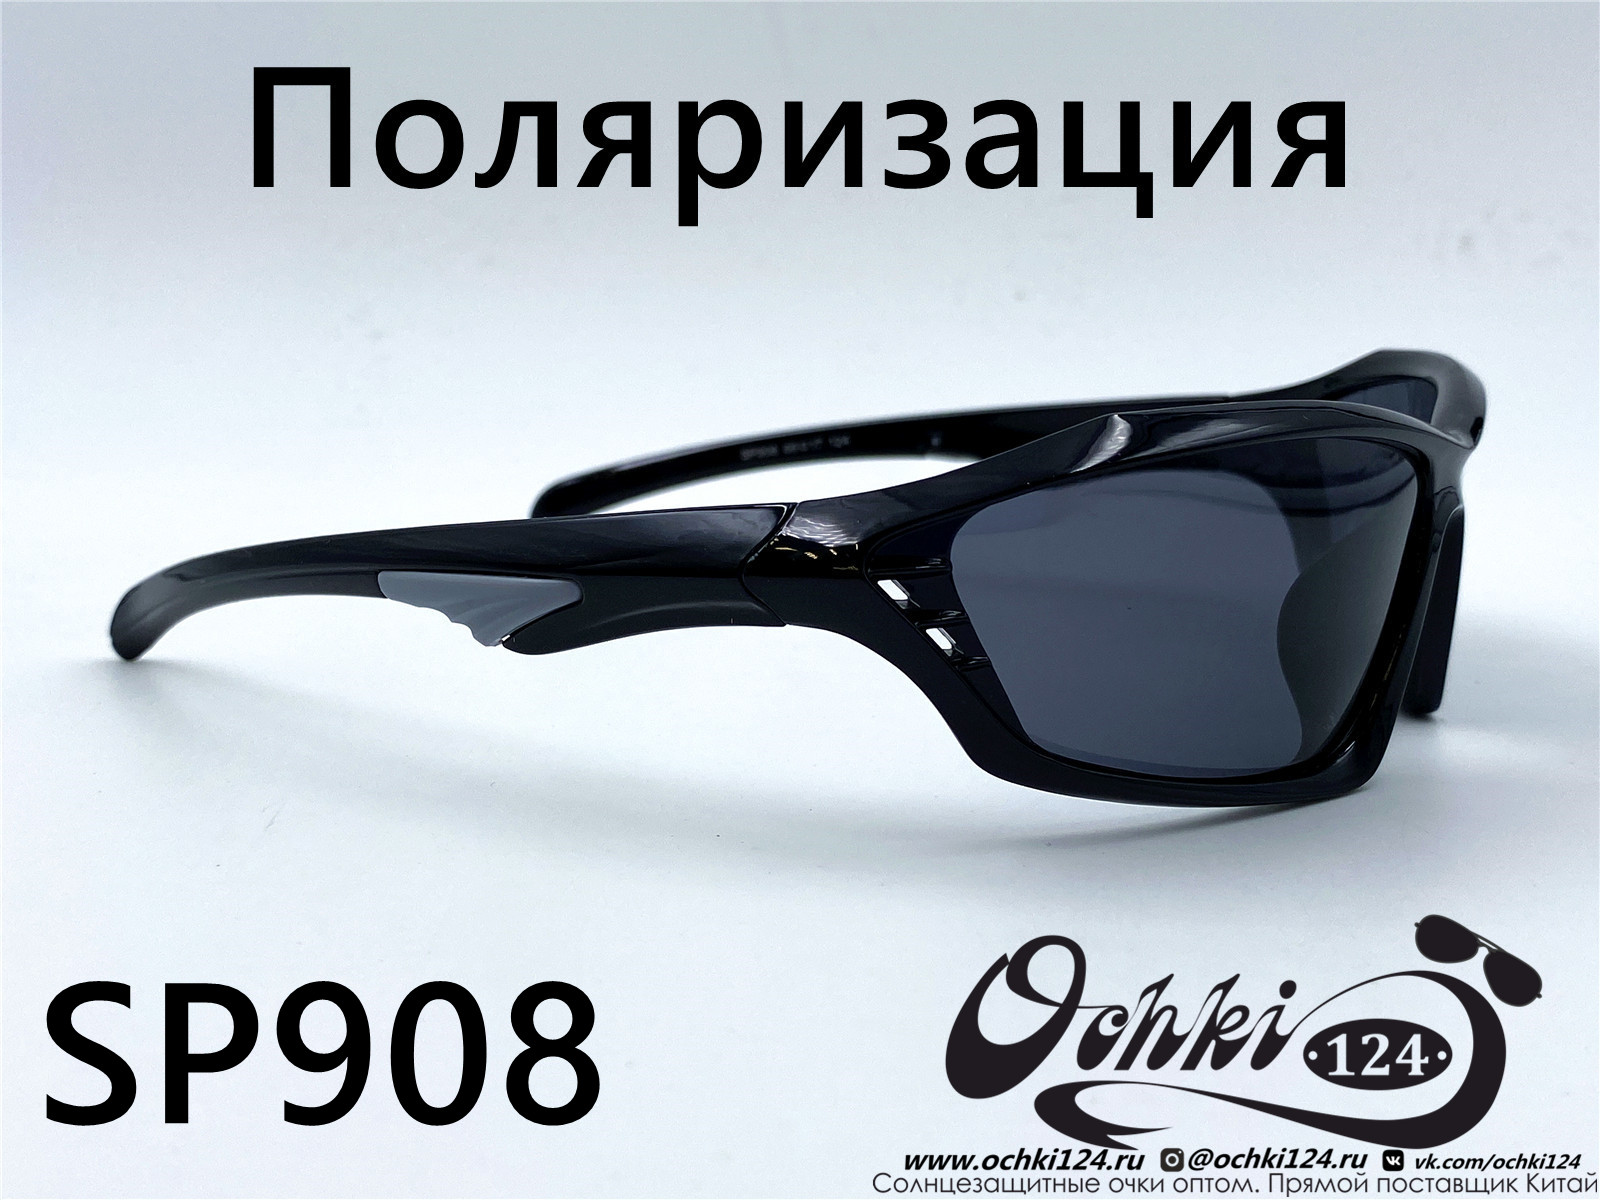  Солнцезащитные очки картинка 2022 Мужские Поляризованные Спорт Materice SP908-5 